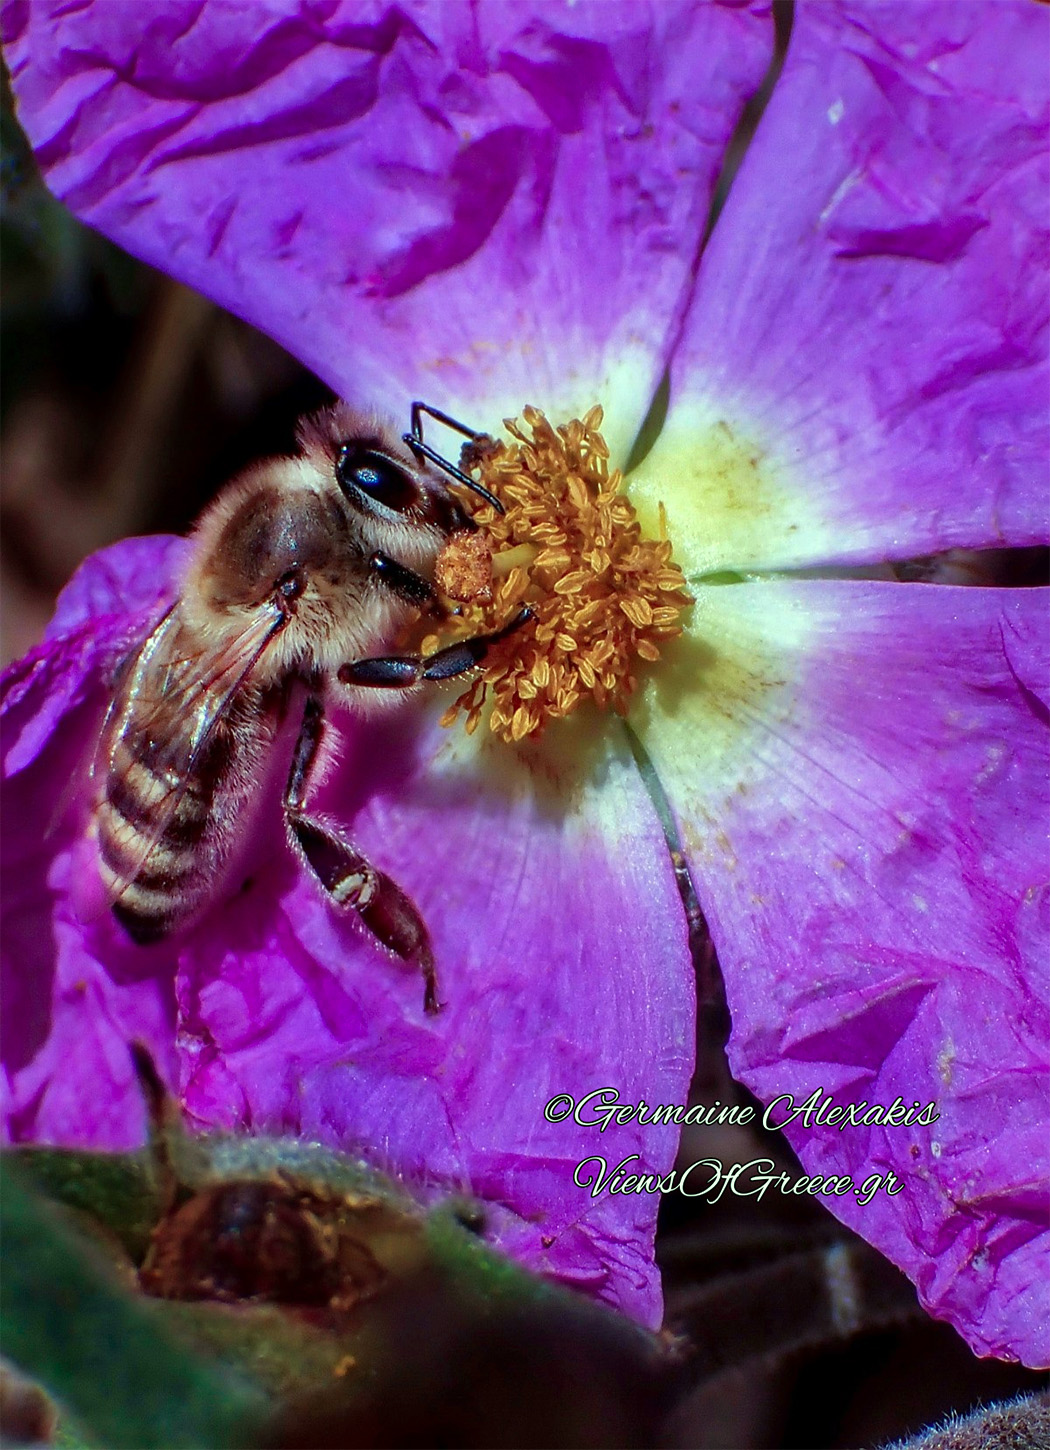 Λαβδανο-προσφέρει-την-γύρη-του-σε-μια-ακούραστη-μέλισσα